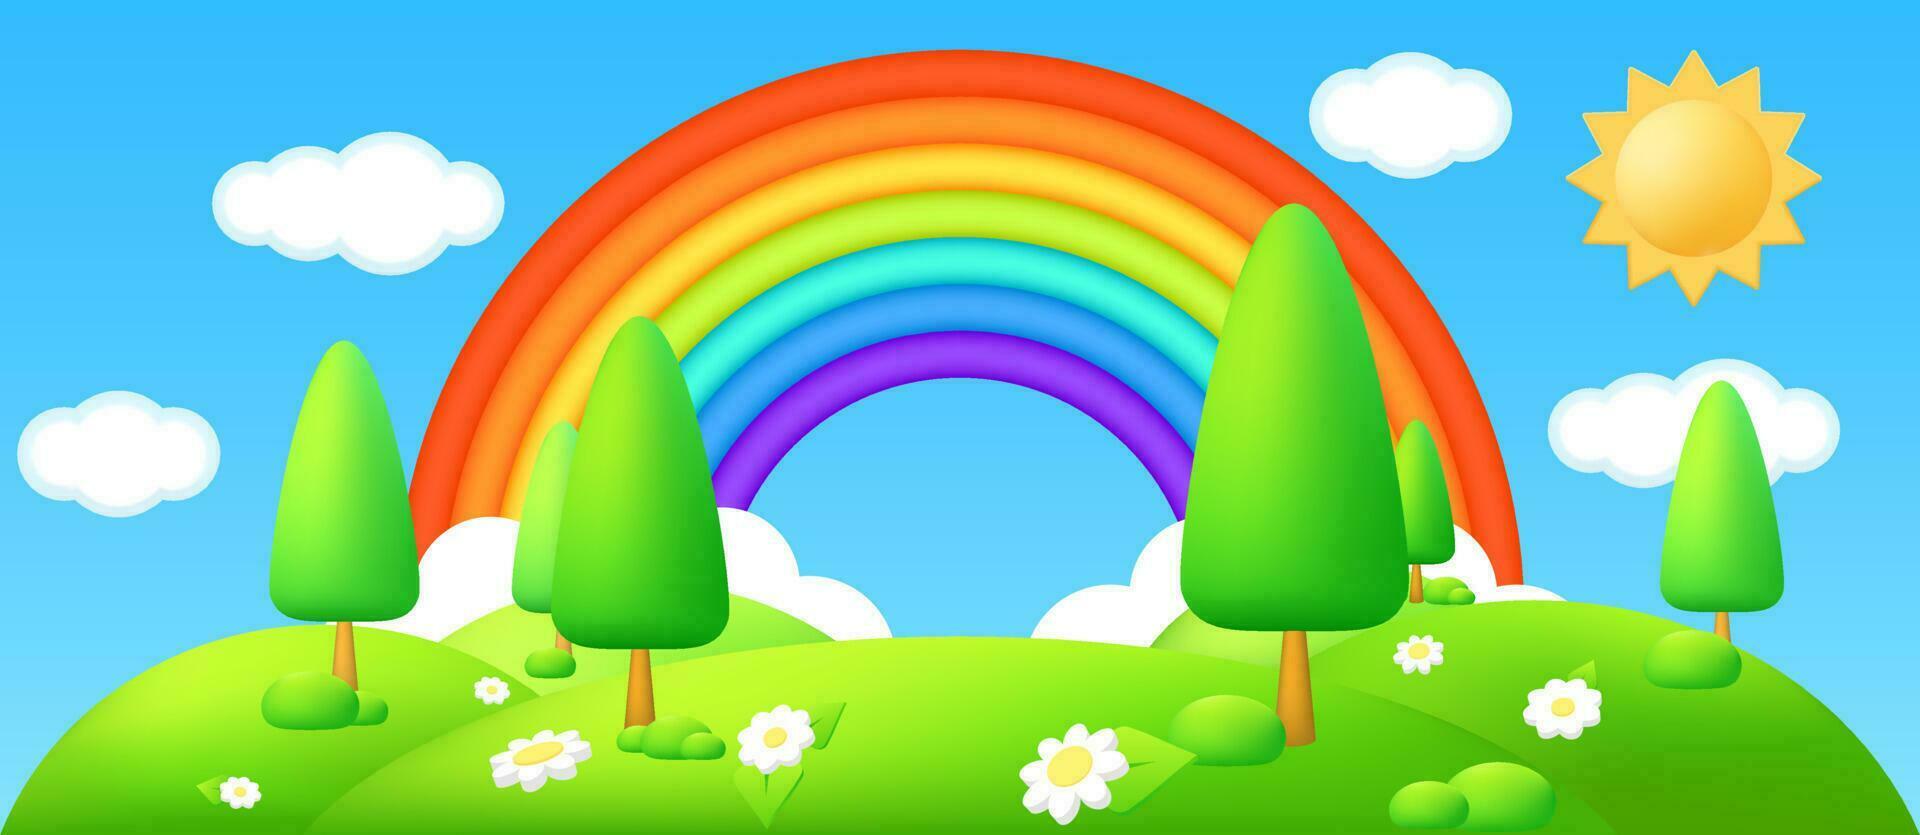 3d plastic vector illustratie van een mooi platteland landschap met groen heuvels, zon, bloemen, en een regenboog in de lucht. perfect voor kinderen ontwerpen, spandoeken, en Sjablonen. tekenfilm weide.